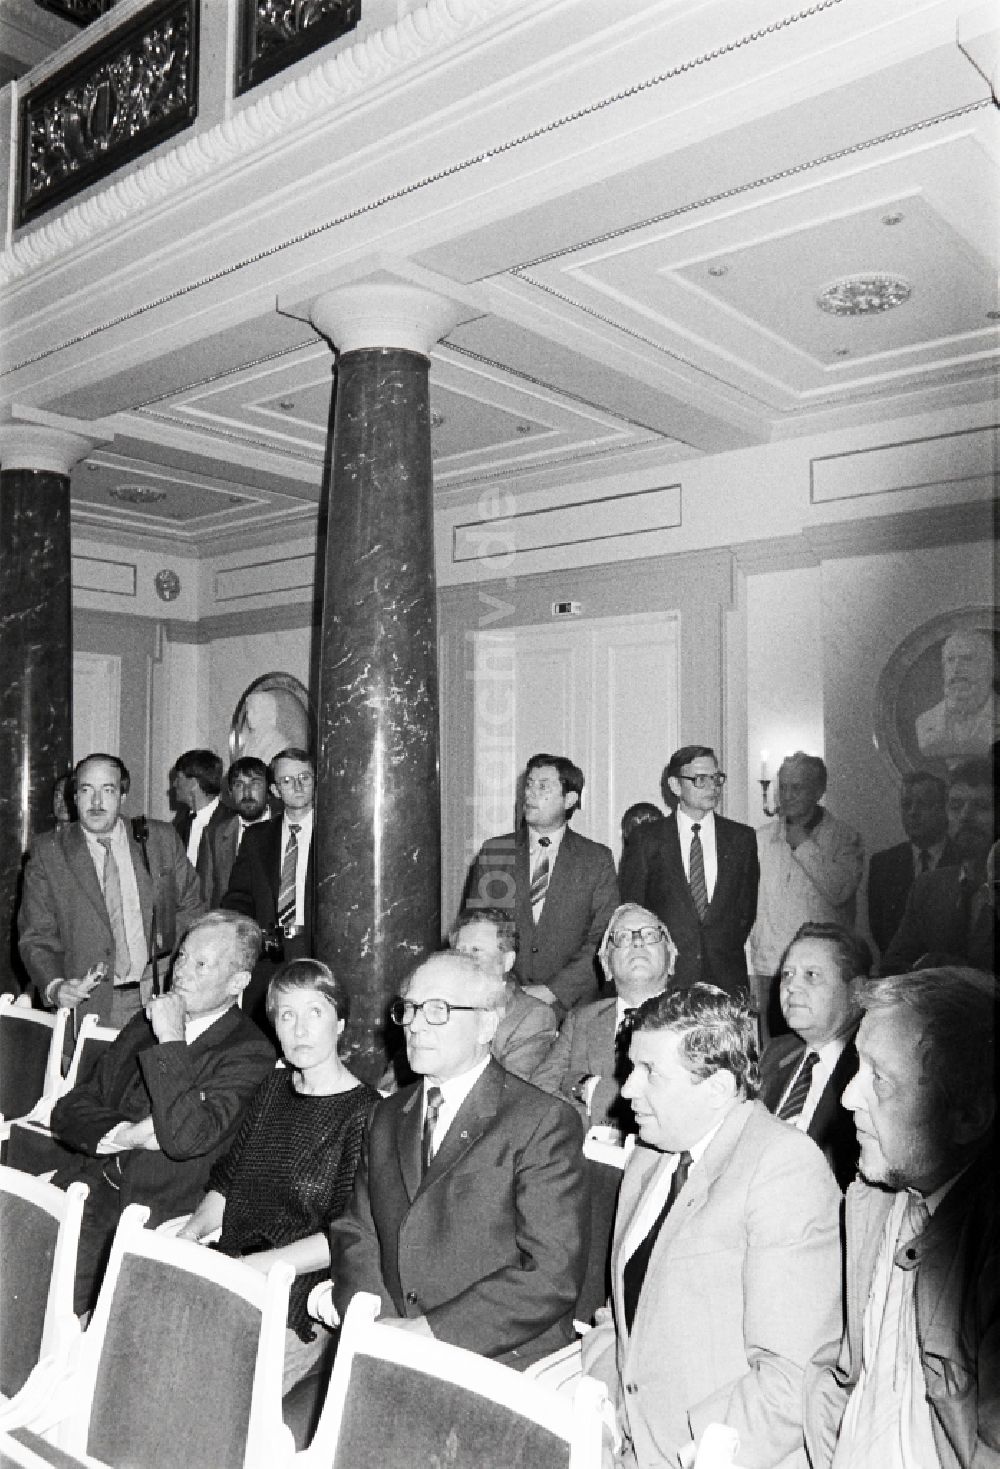 DDR-Fotoarchiv: Berlin - Willy Brandt am Schauspielhaus am Gendarmenmarkt in Berlin, der ehemaligen Hauptstadt der DDR, Deutsche Demokratische Republik